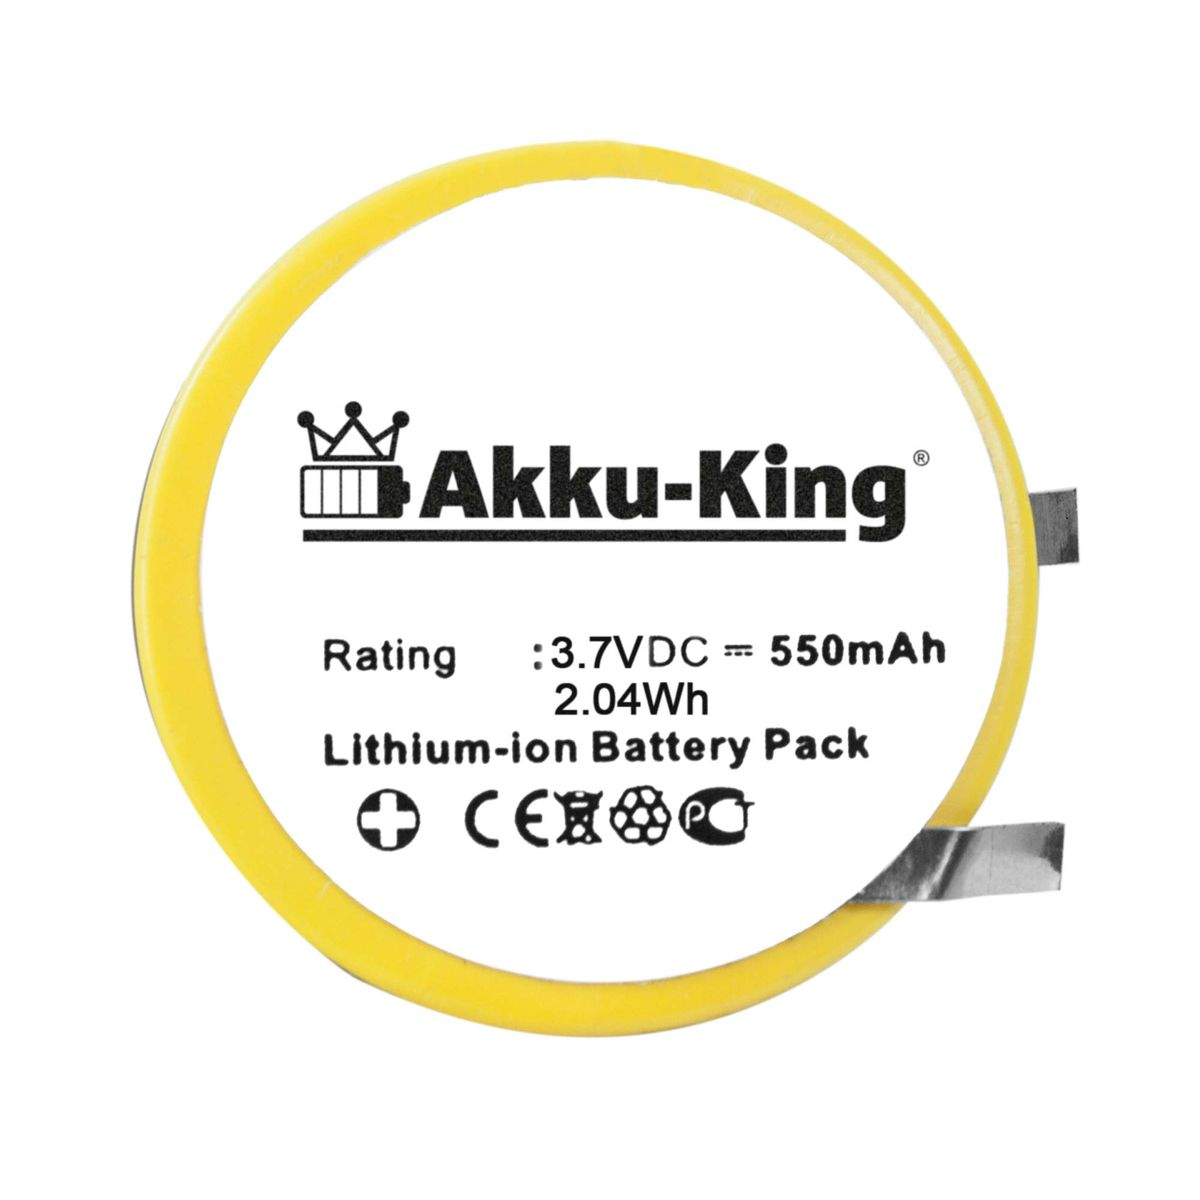 AKKU-KING VX680 Volt, 3.7 550mAh Verifone Li-Ion Akku kompatibel Geräte-Akku, mit